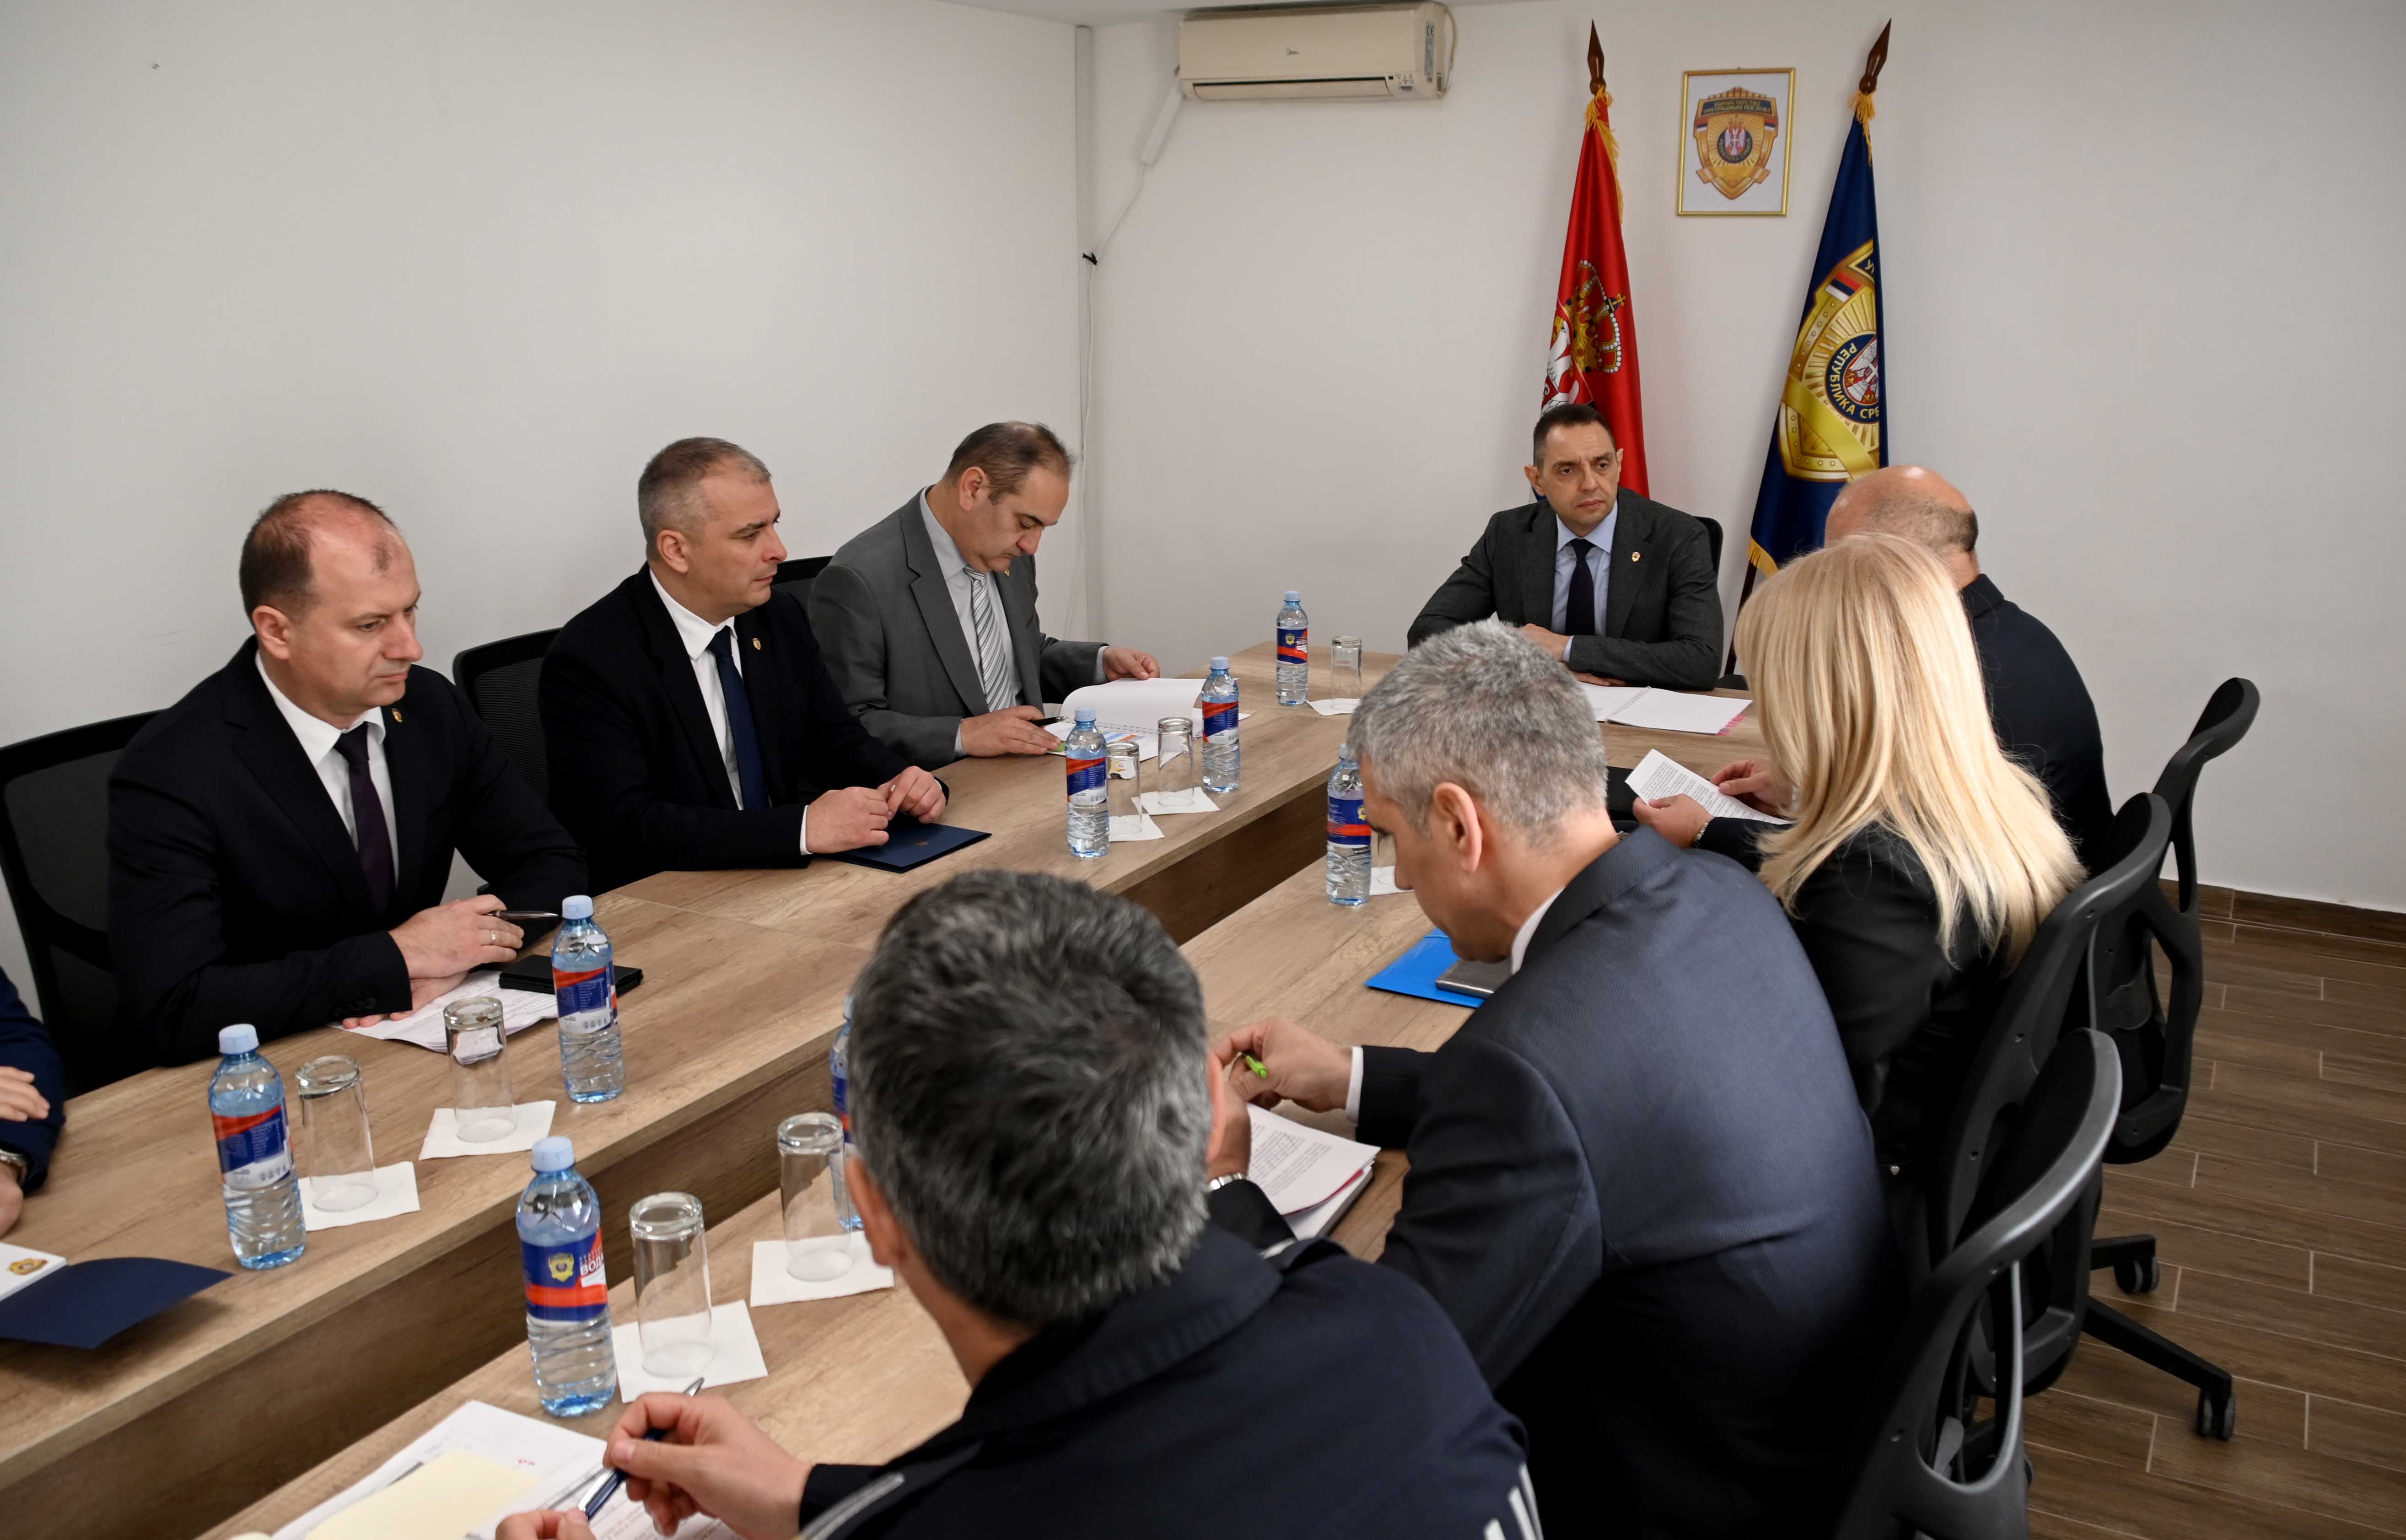 Ministar Aleksandar Vulin obišao Policijsku upravu Pirot: Država intenzivno jača kapacitete policije, ali i ulaže u obuku kadrova